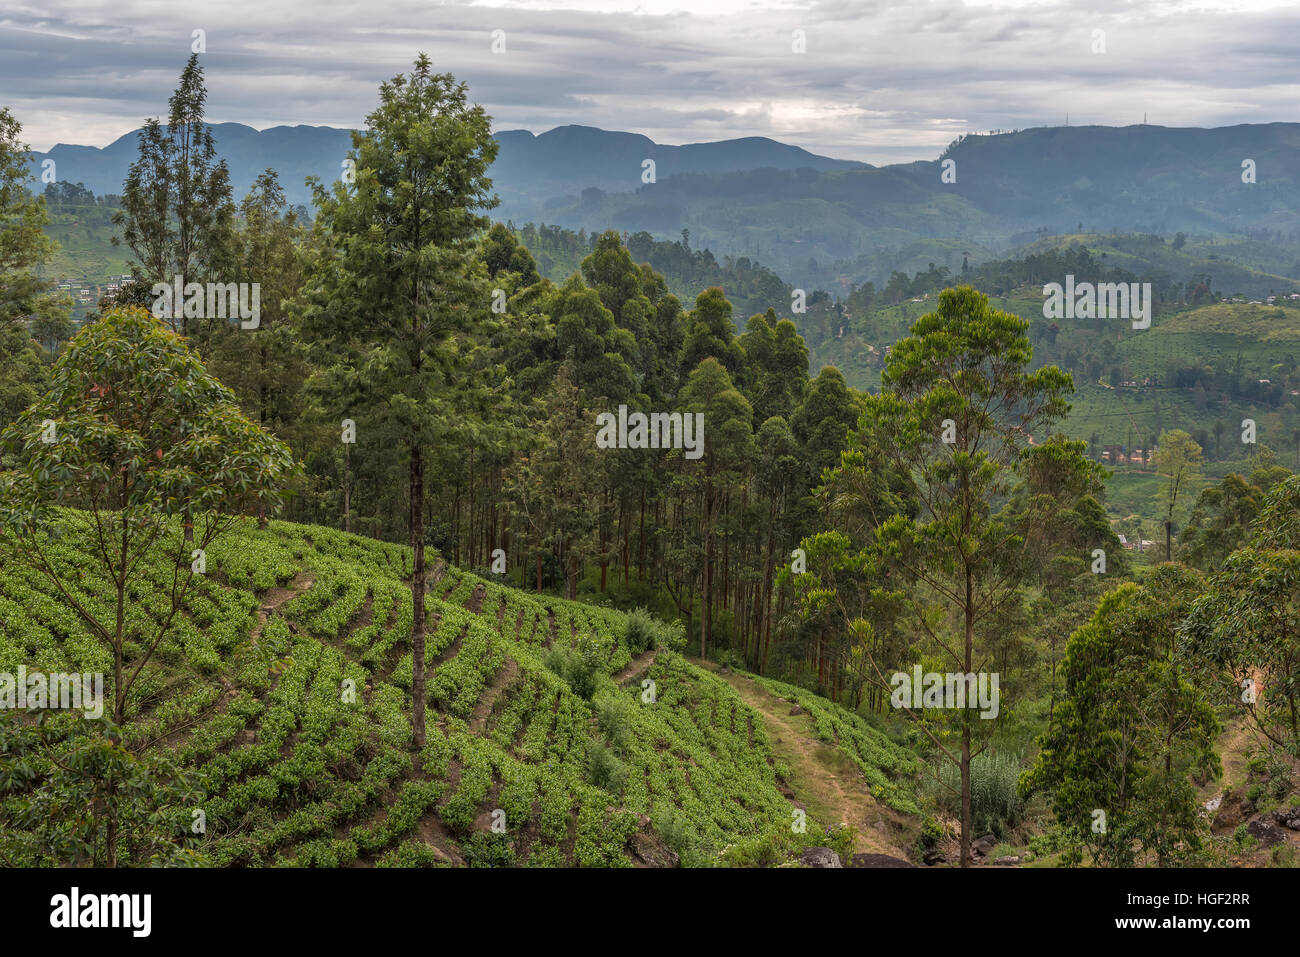 Sri Lanka: famous Ceylon highland tea fields Stock Photo